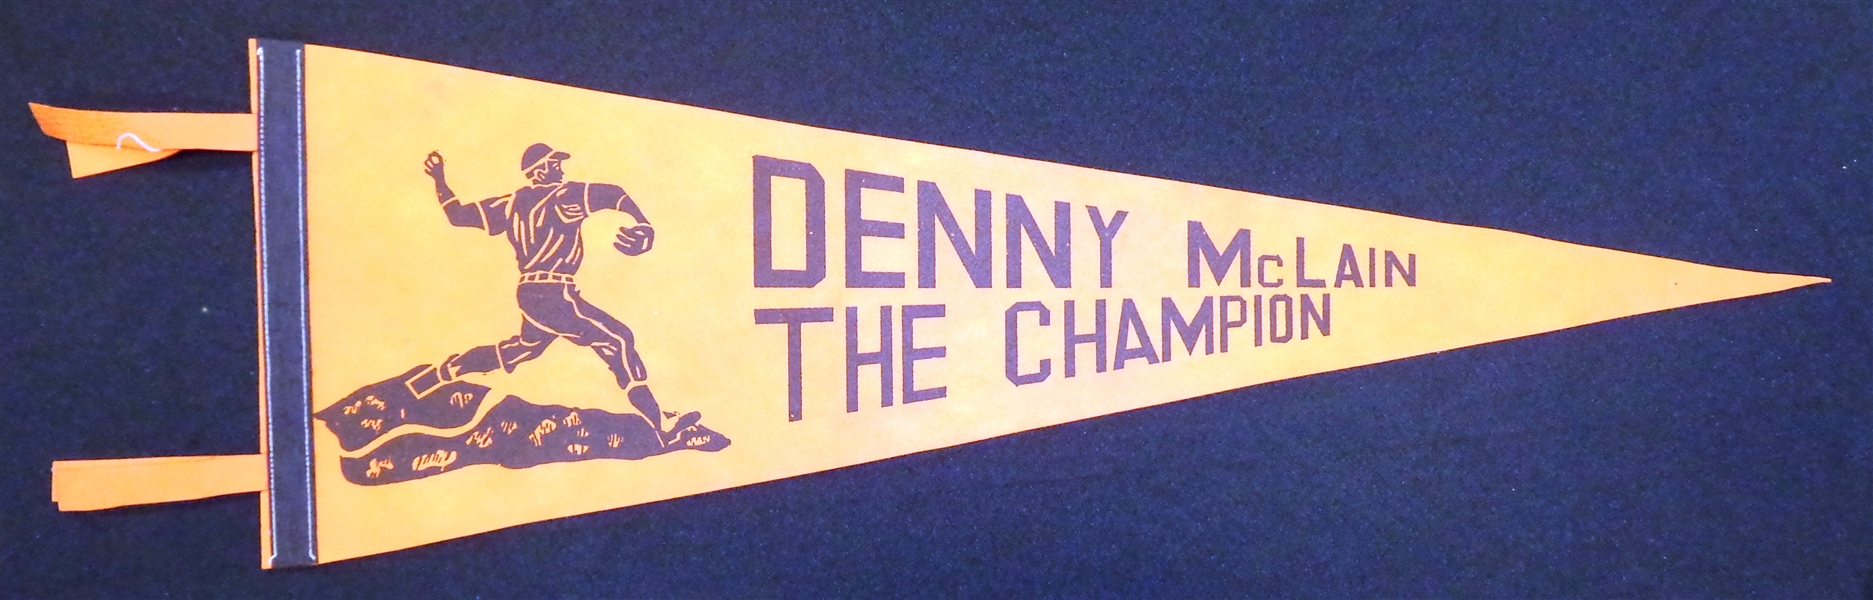 Denny McLain Vintage Ca. 1968 Pennant